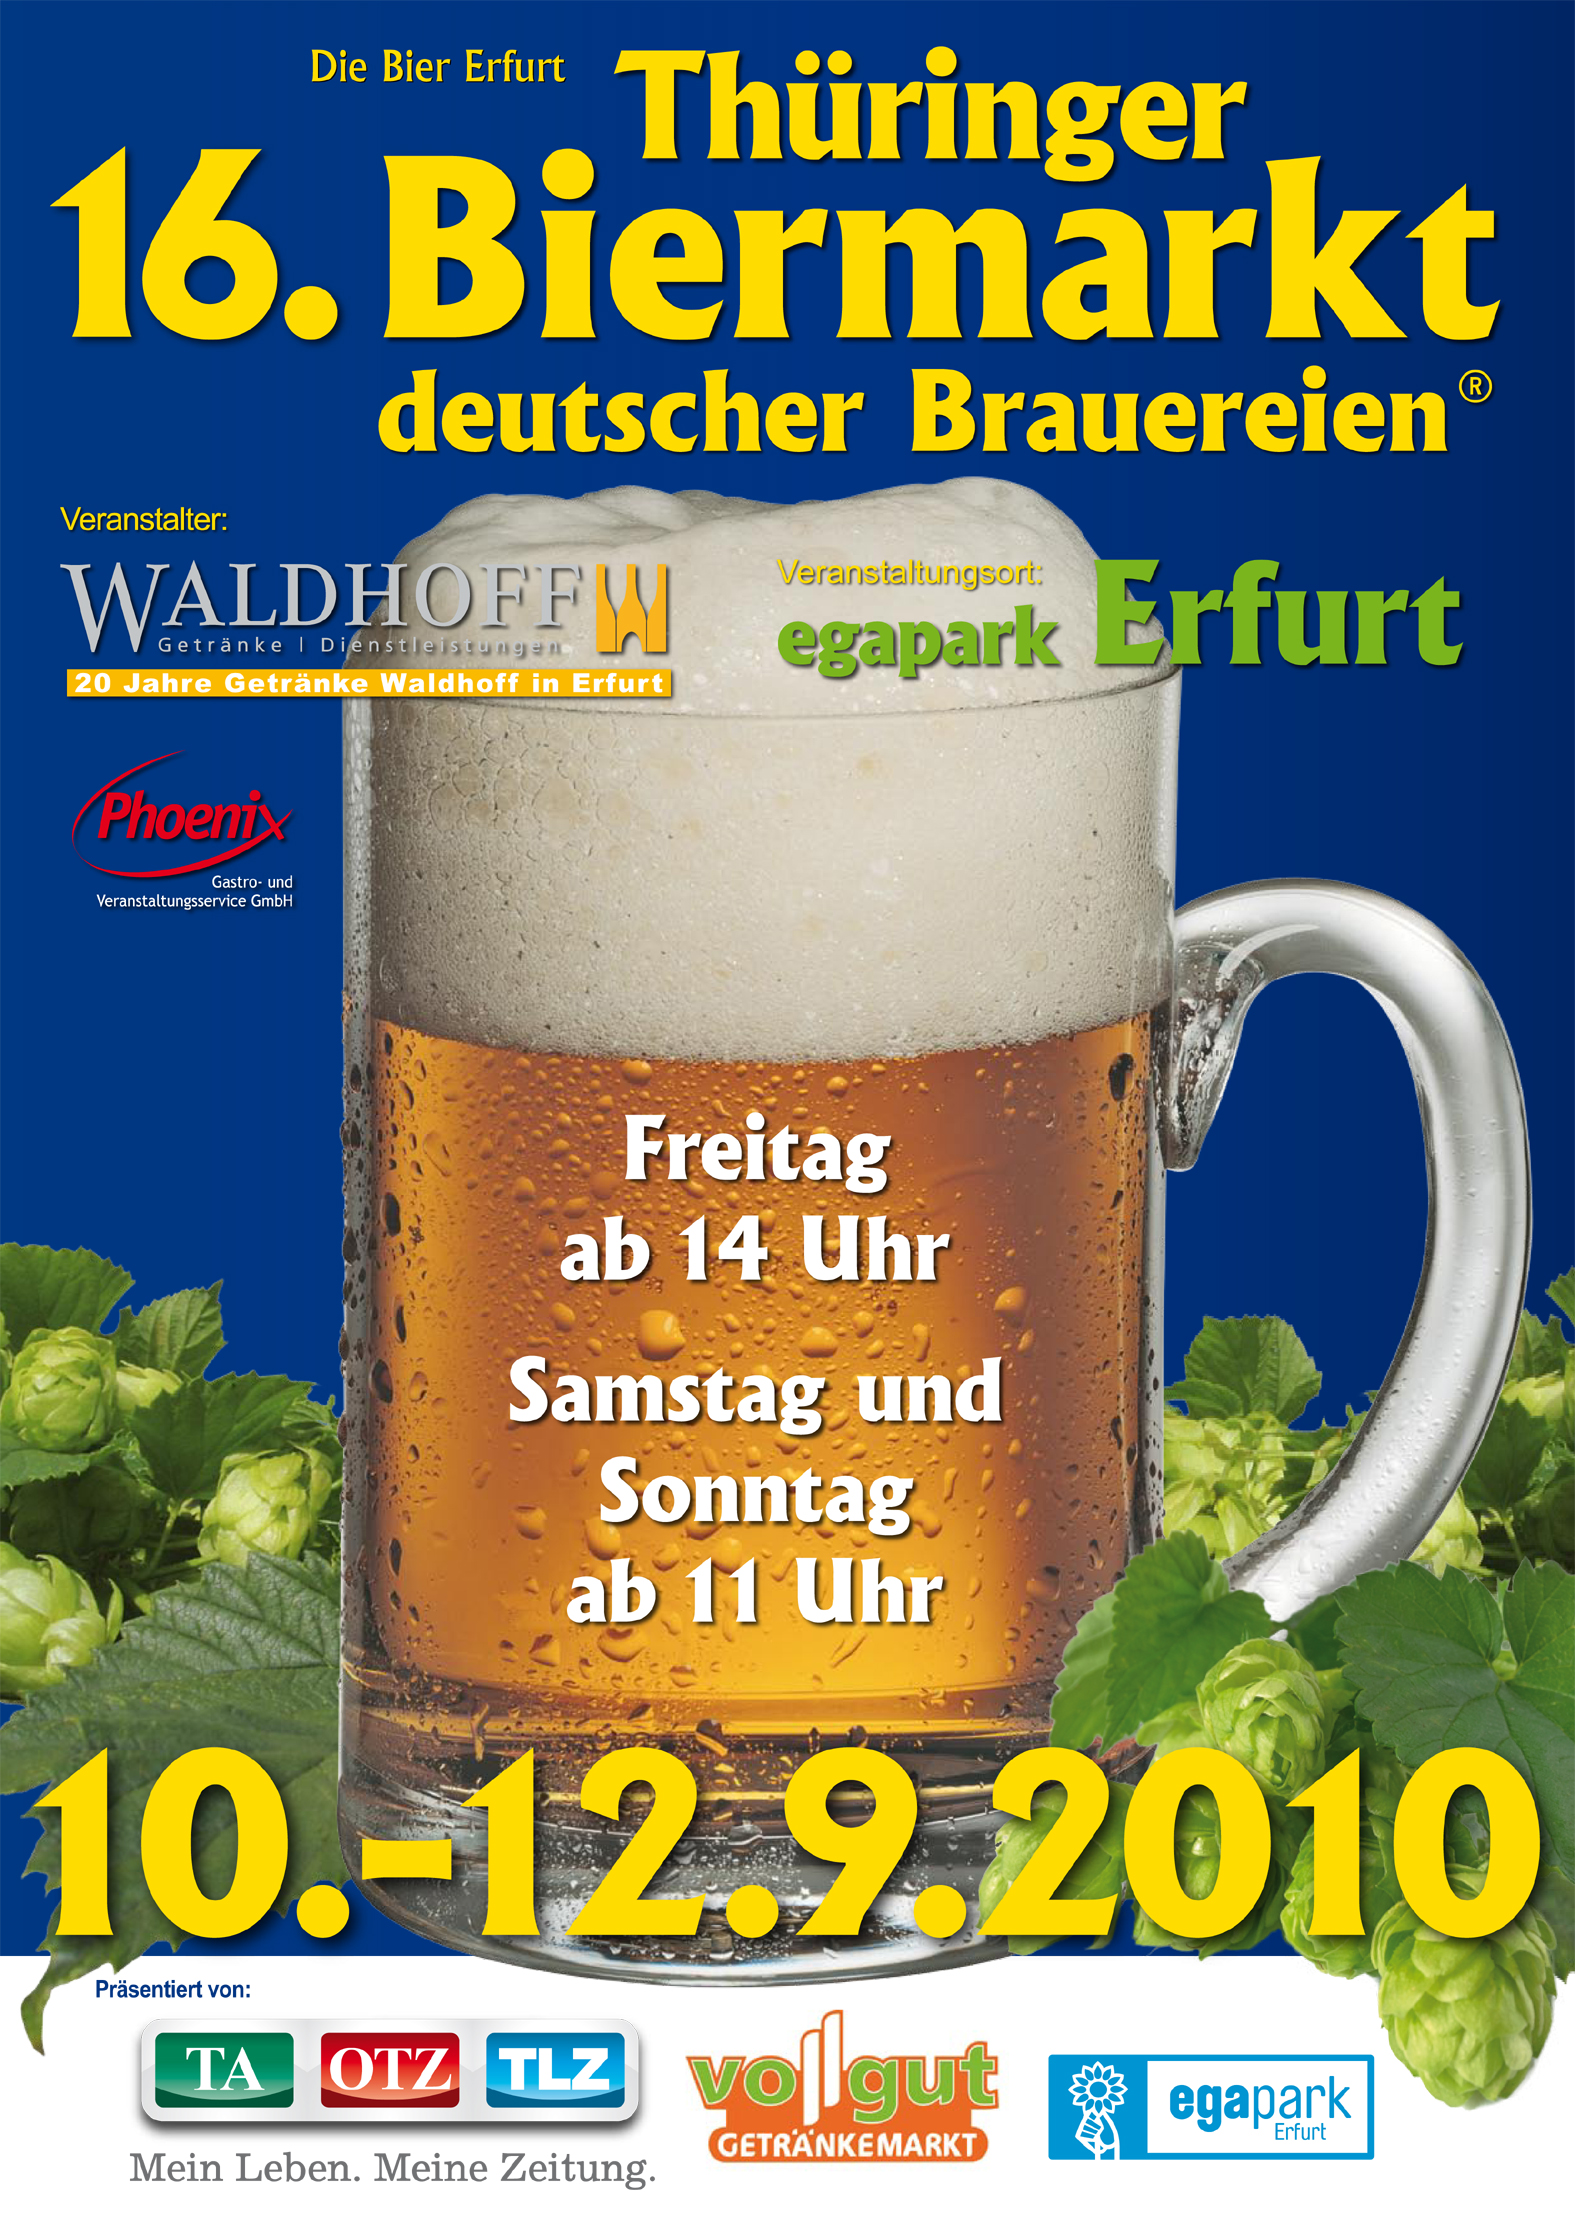 16. Thüringer Biermarkt